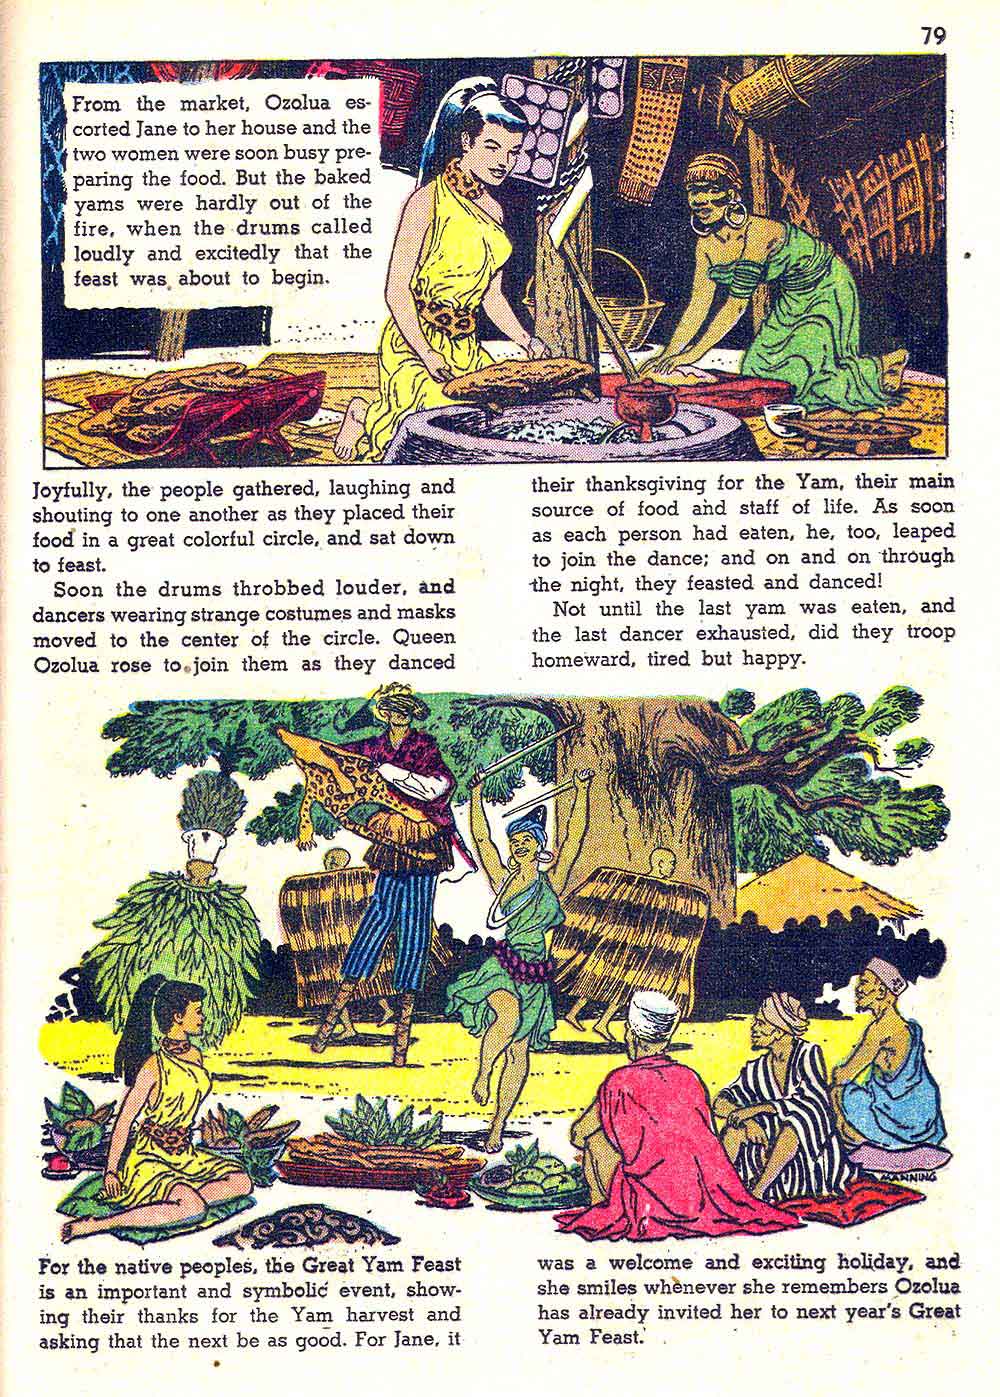 Tarzan's Jungle Annual v1 #4 - Russ Manning dell silver age comic book page art